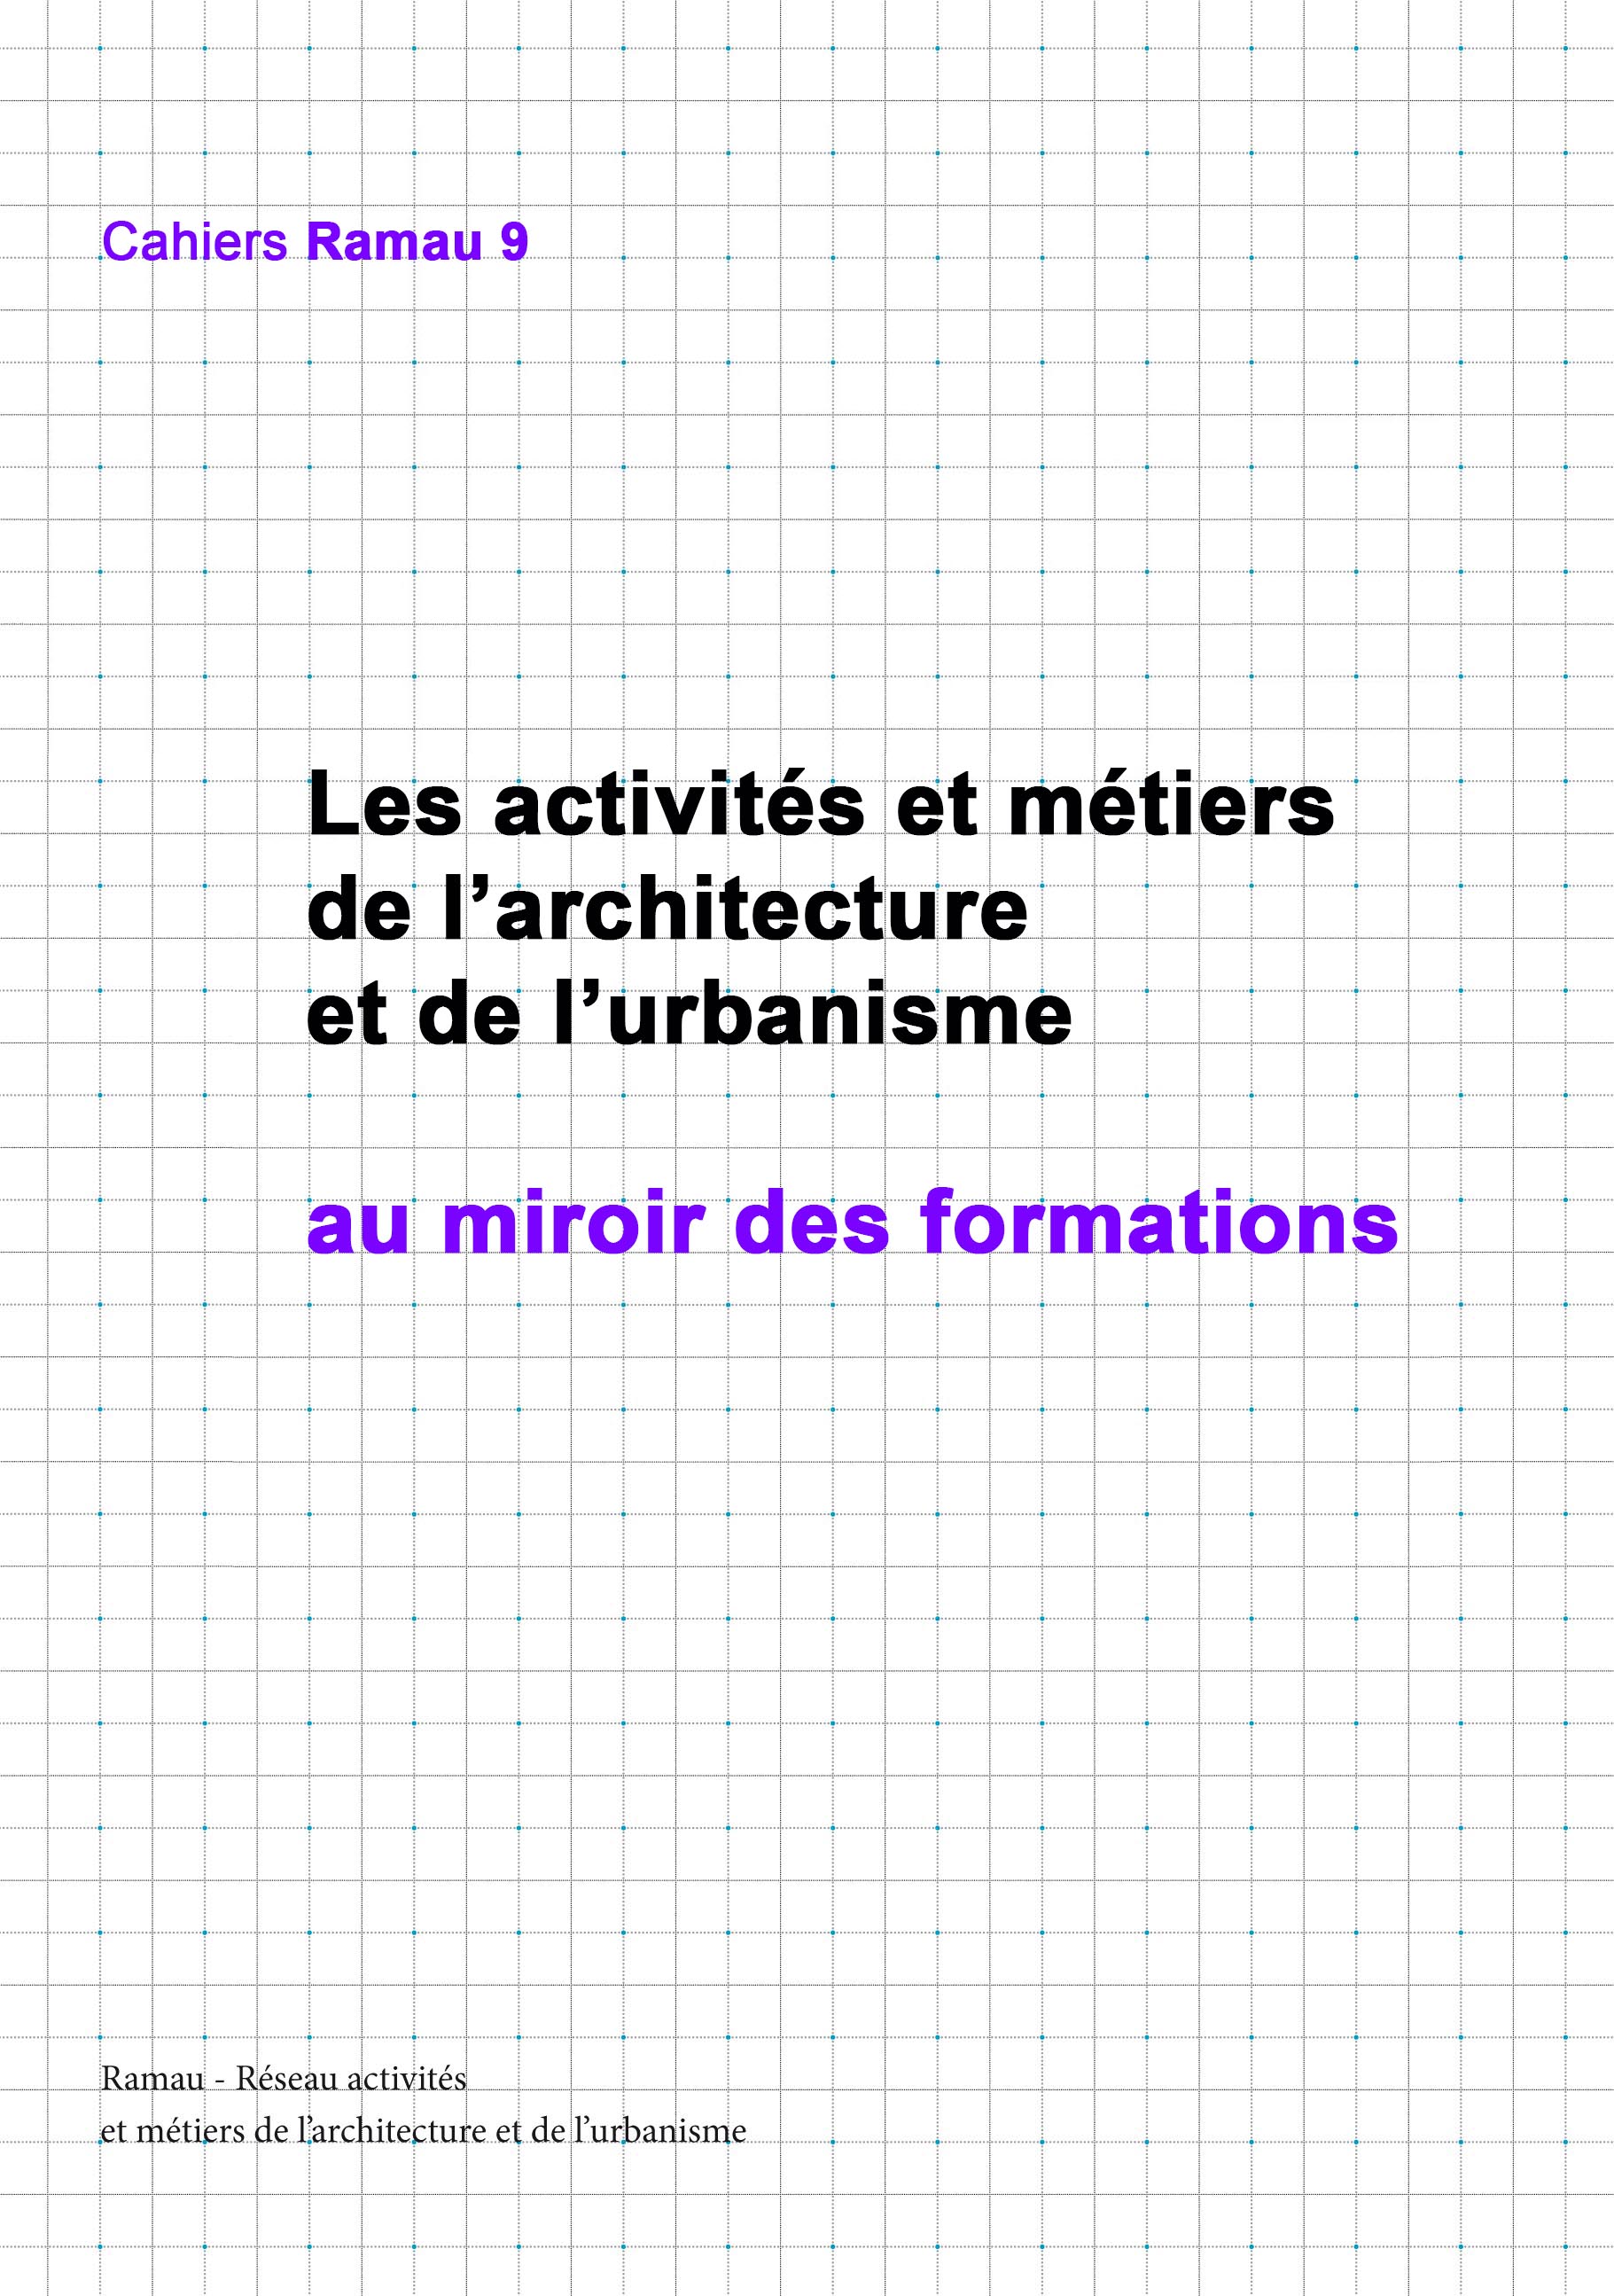 Les activités et métiers de l'architecture et de l'urbanisme au miroir des formations